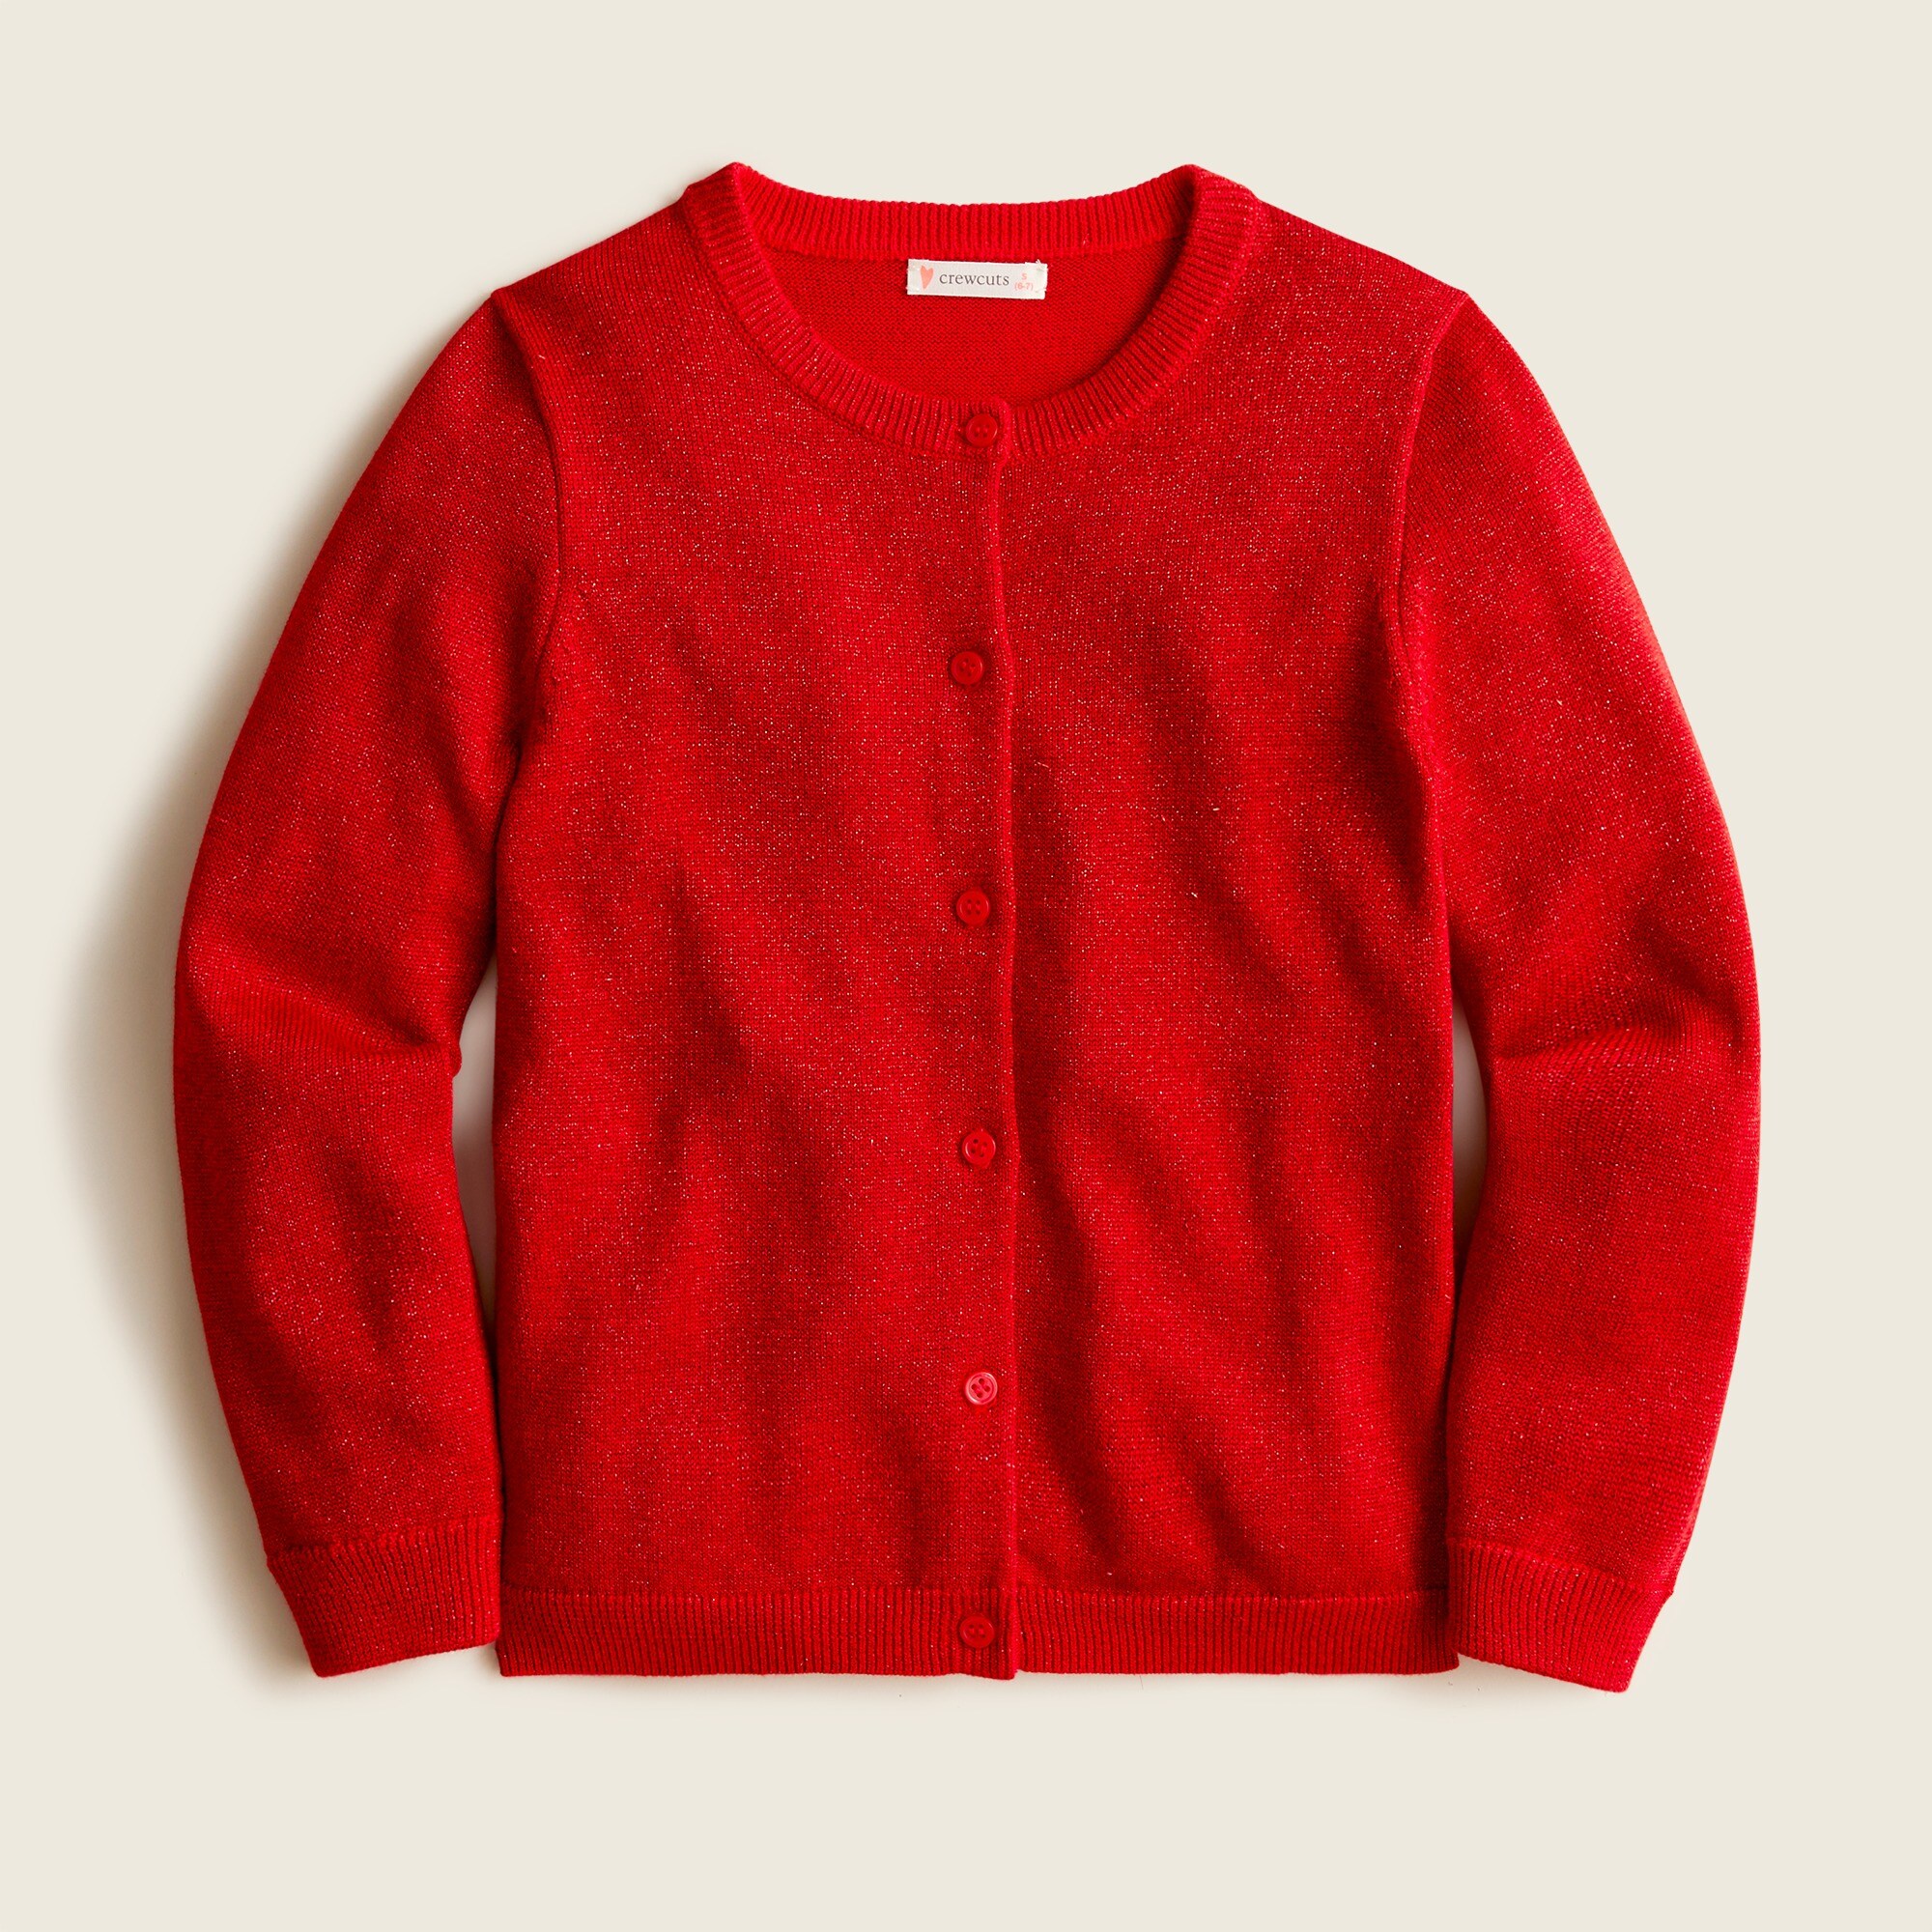 제이크루 걸즈 가디건 J.Crew Girls Casey metallic cardigan sweater,CLASSIC RED